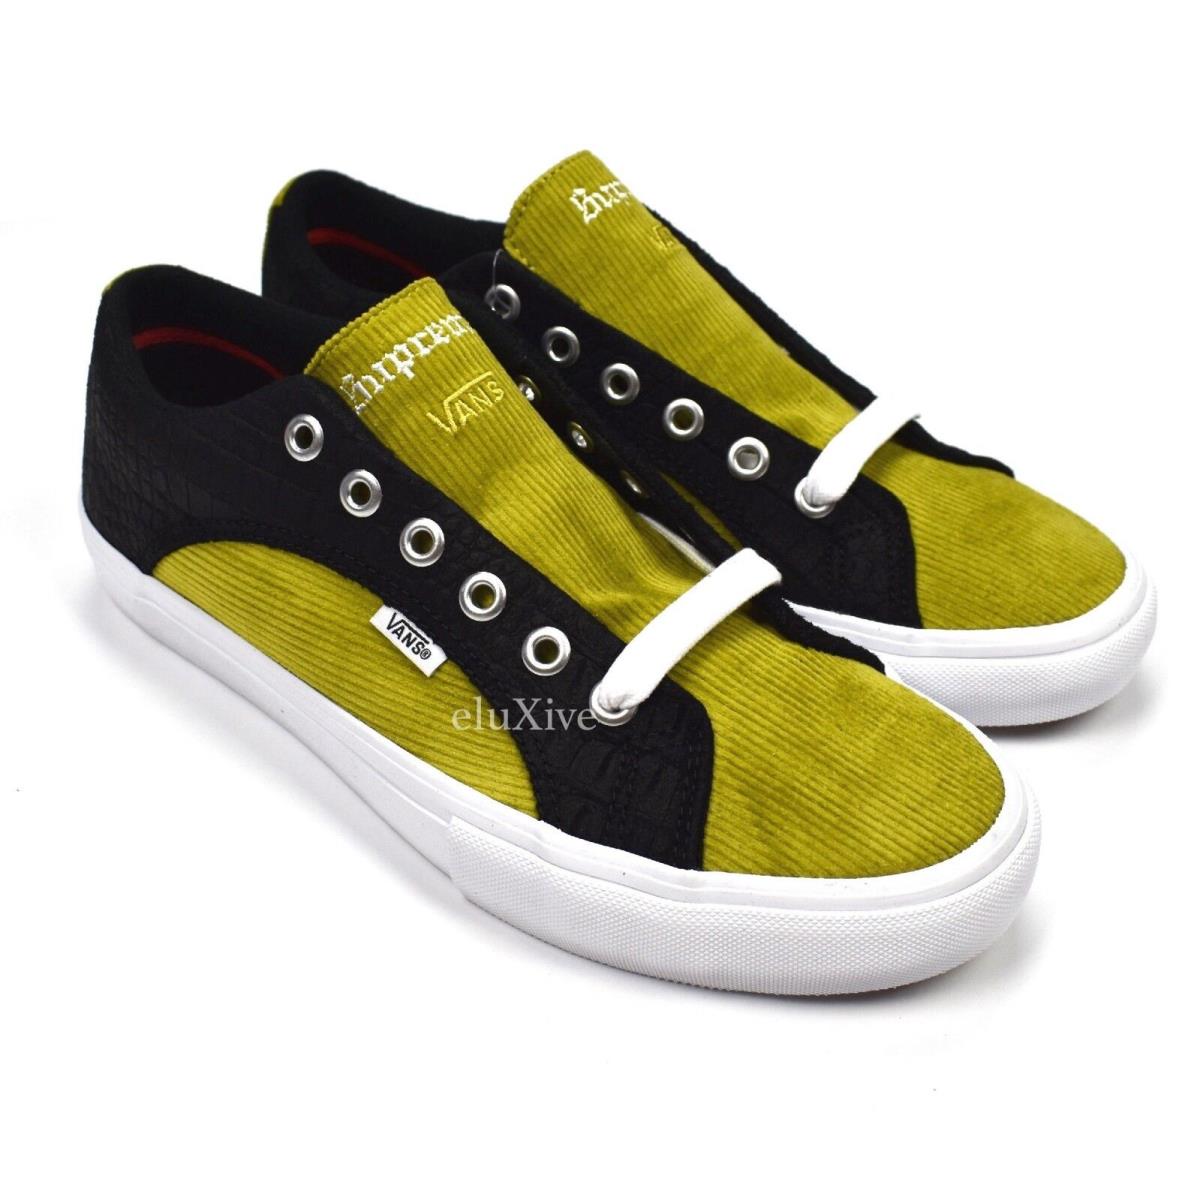 Supreme x Vans Croc Suede Mustard Corduroy Lampin Pro Sneakers 9.5